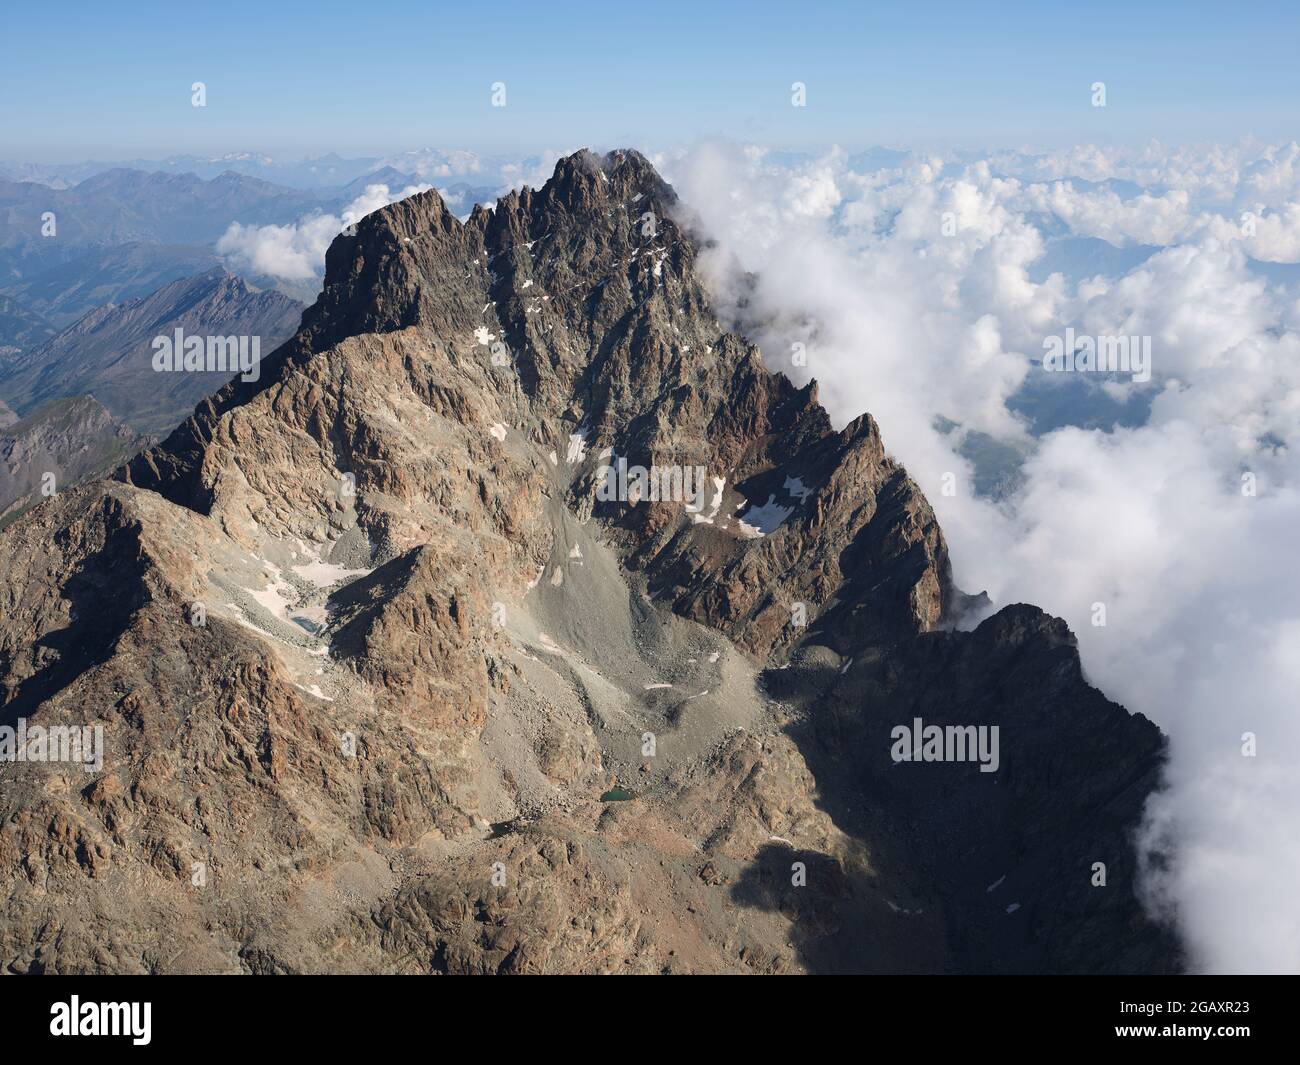 VISTA AEREA. Parete rocciosa a sud del Monte viso (3841 m) con nuvole ad est sopra la Pianura Padana. Provincia di Cuneo, Piemonte, Italia. Foto Stock